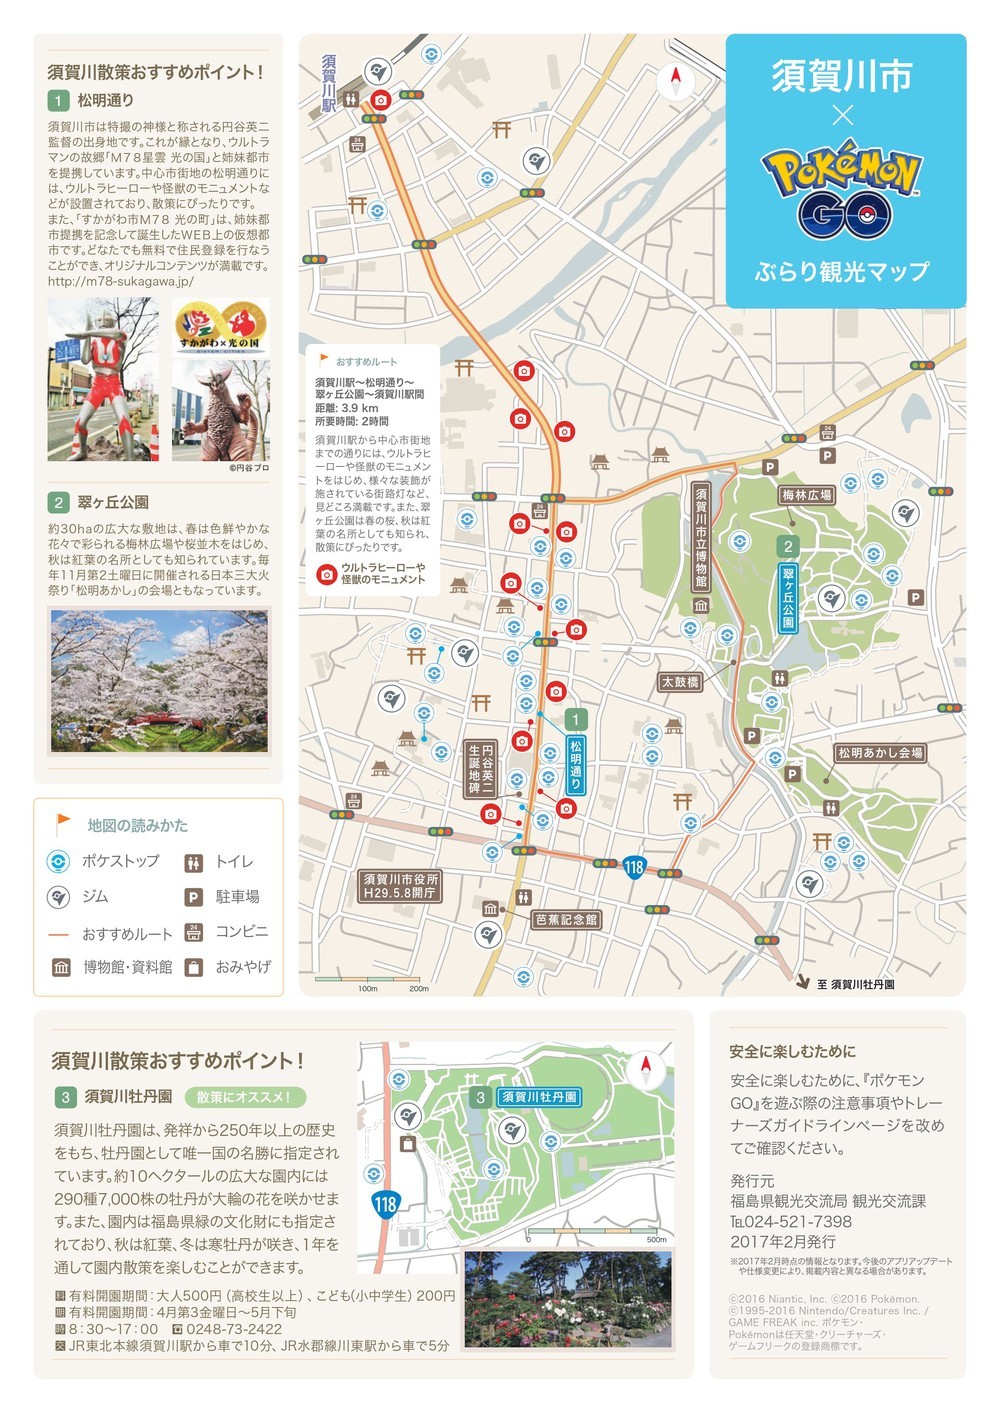 「ポケモンGO」公認のぶらり観光マップ　第1弾は福島県須賀川市